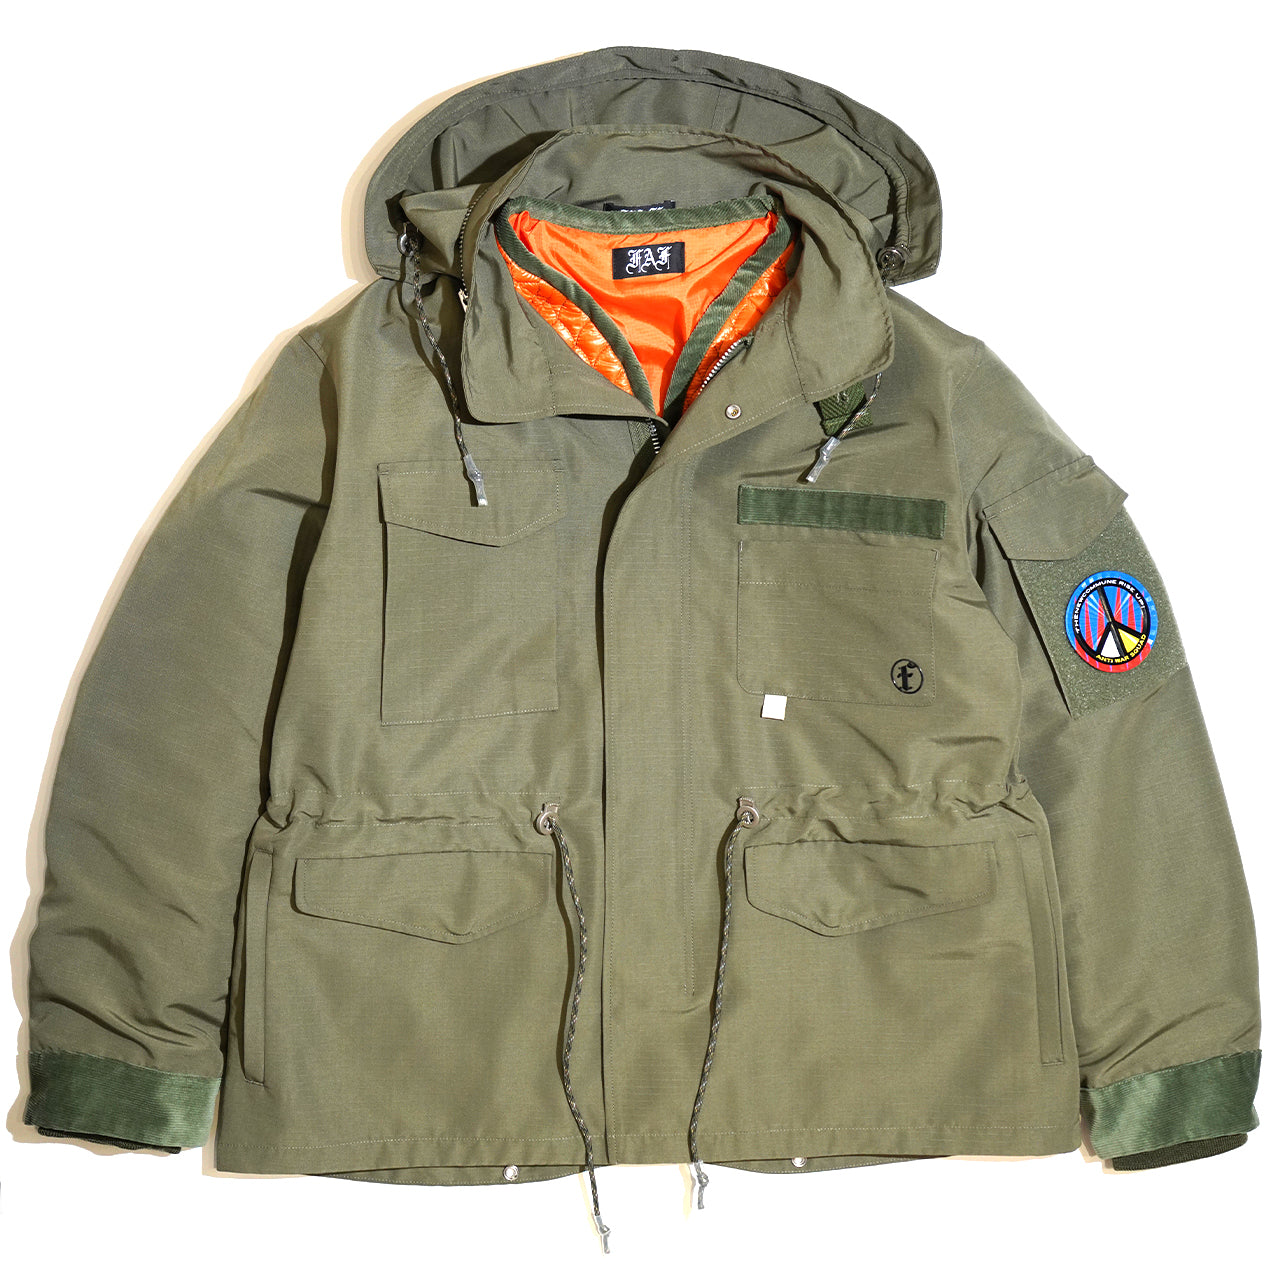 NEWCOMMUNE Military Jacket / Khaki